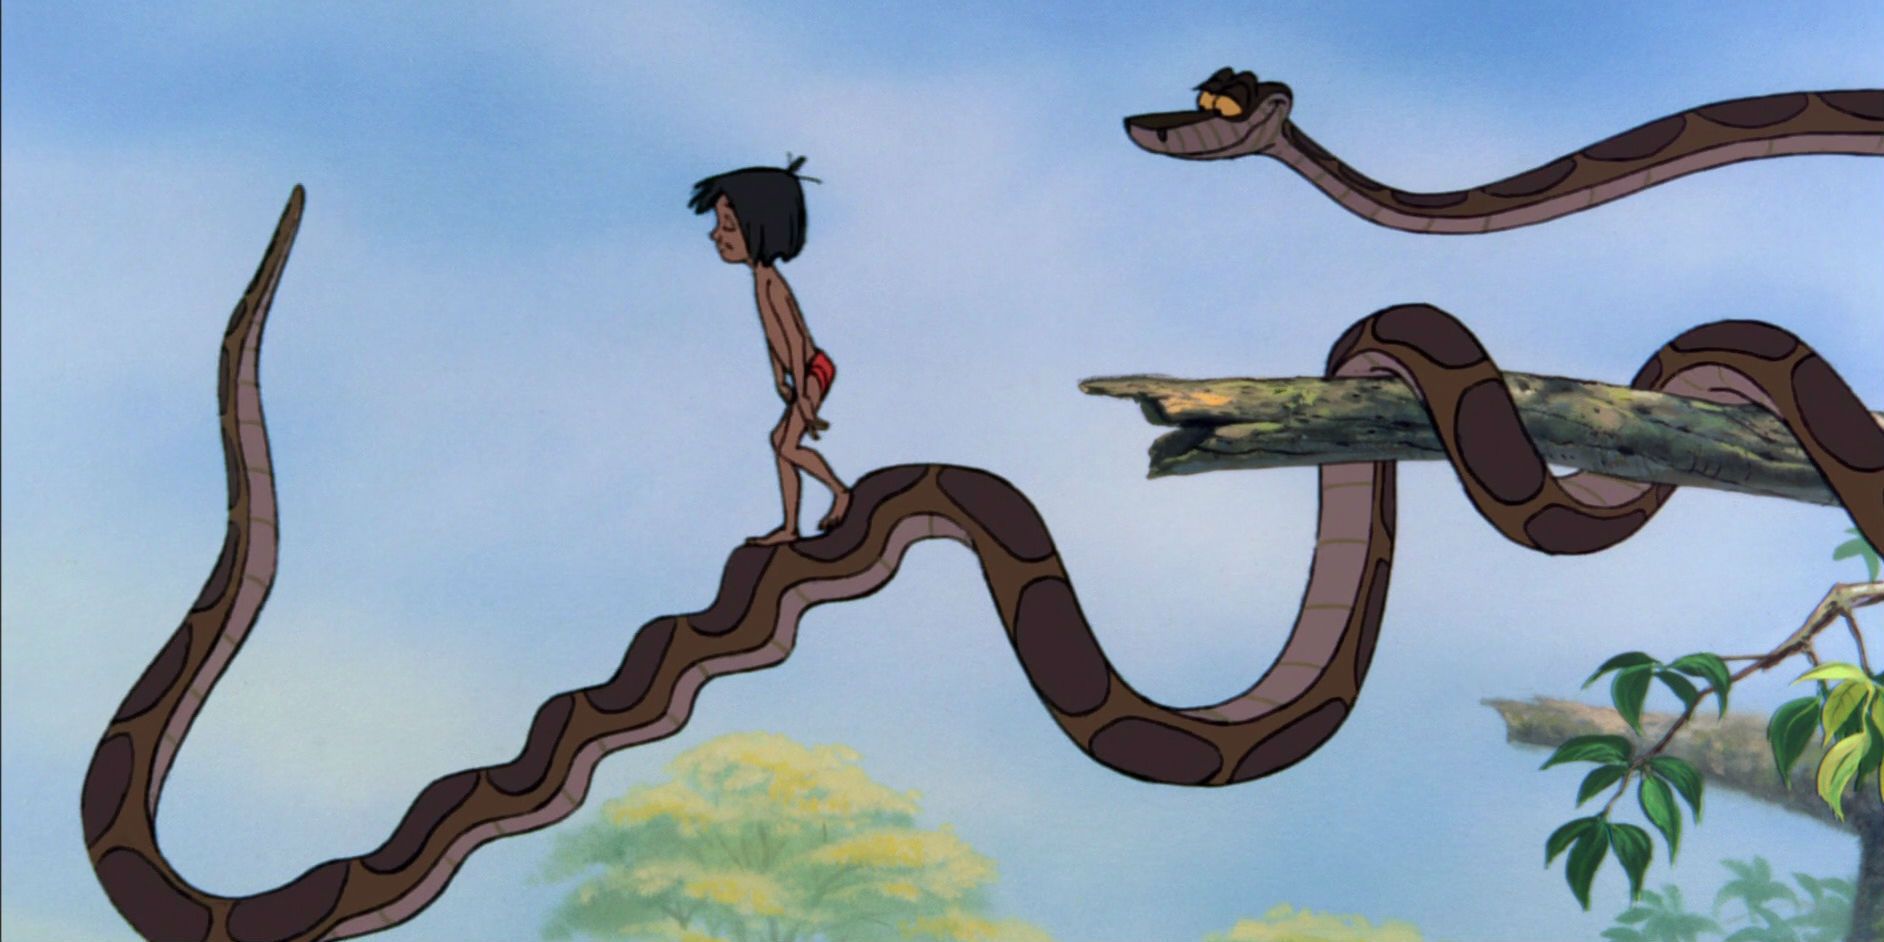 Mowgli and Kaa in Jungle Book